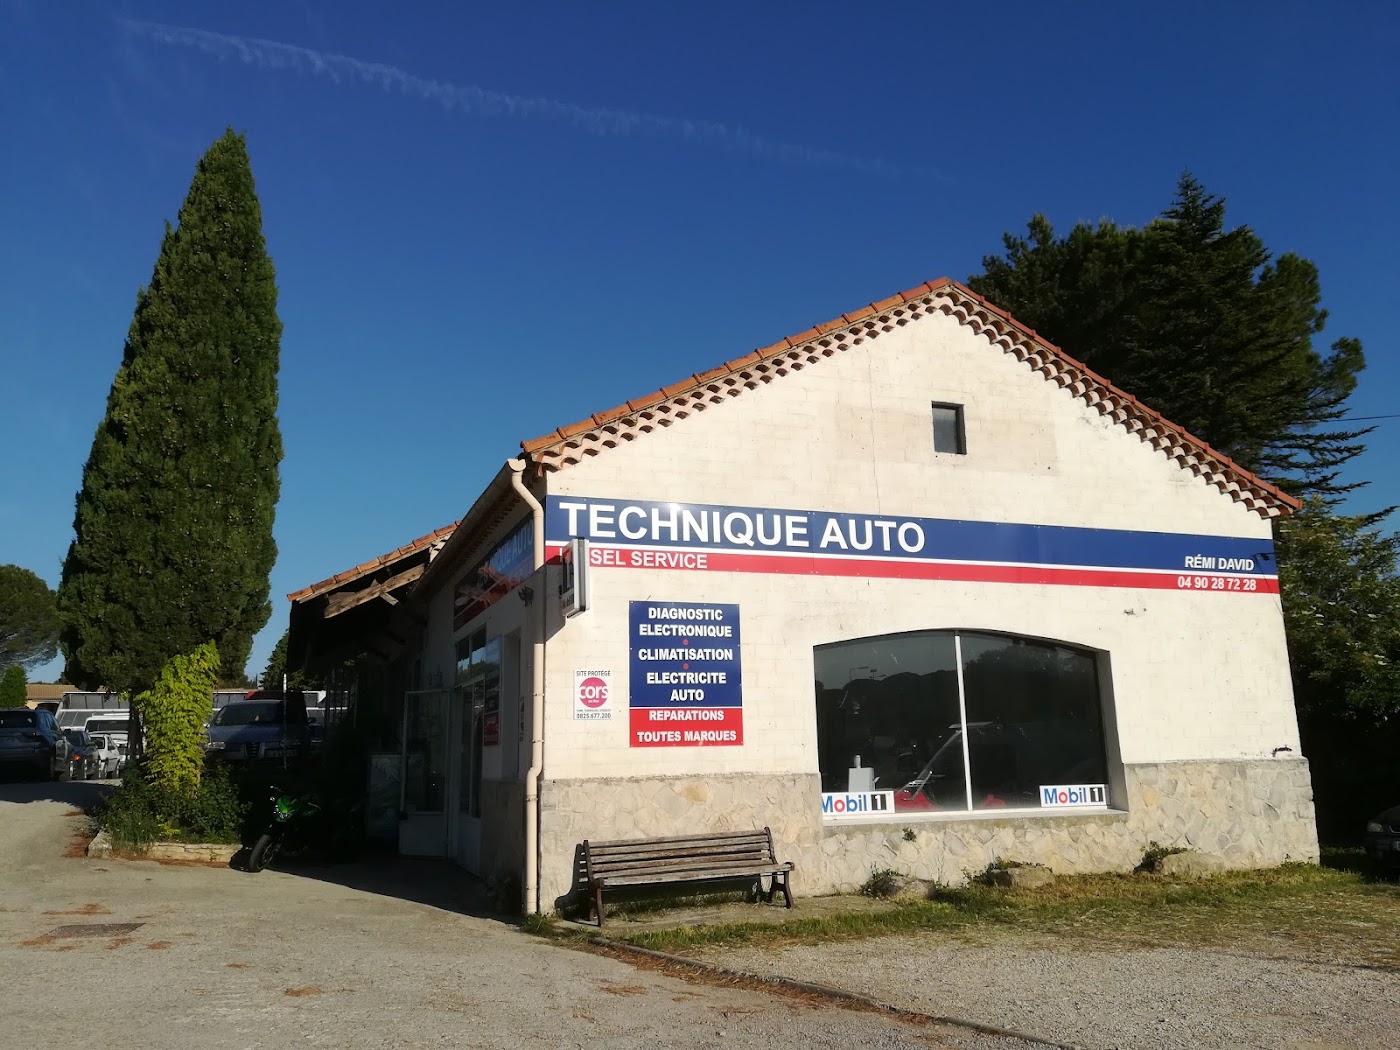 garage Technique auto / Diesel service (Rémi DAVID)